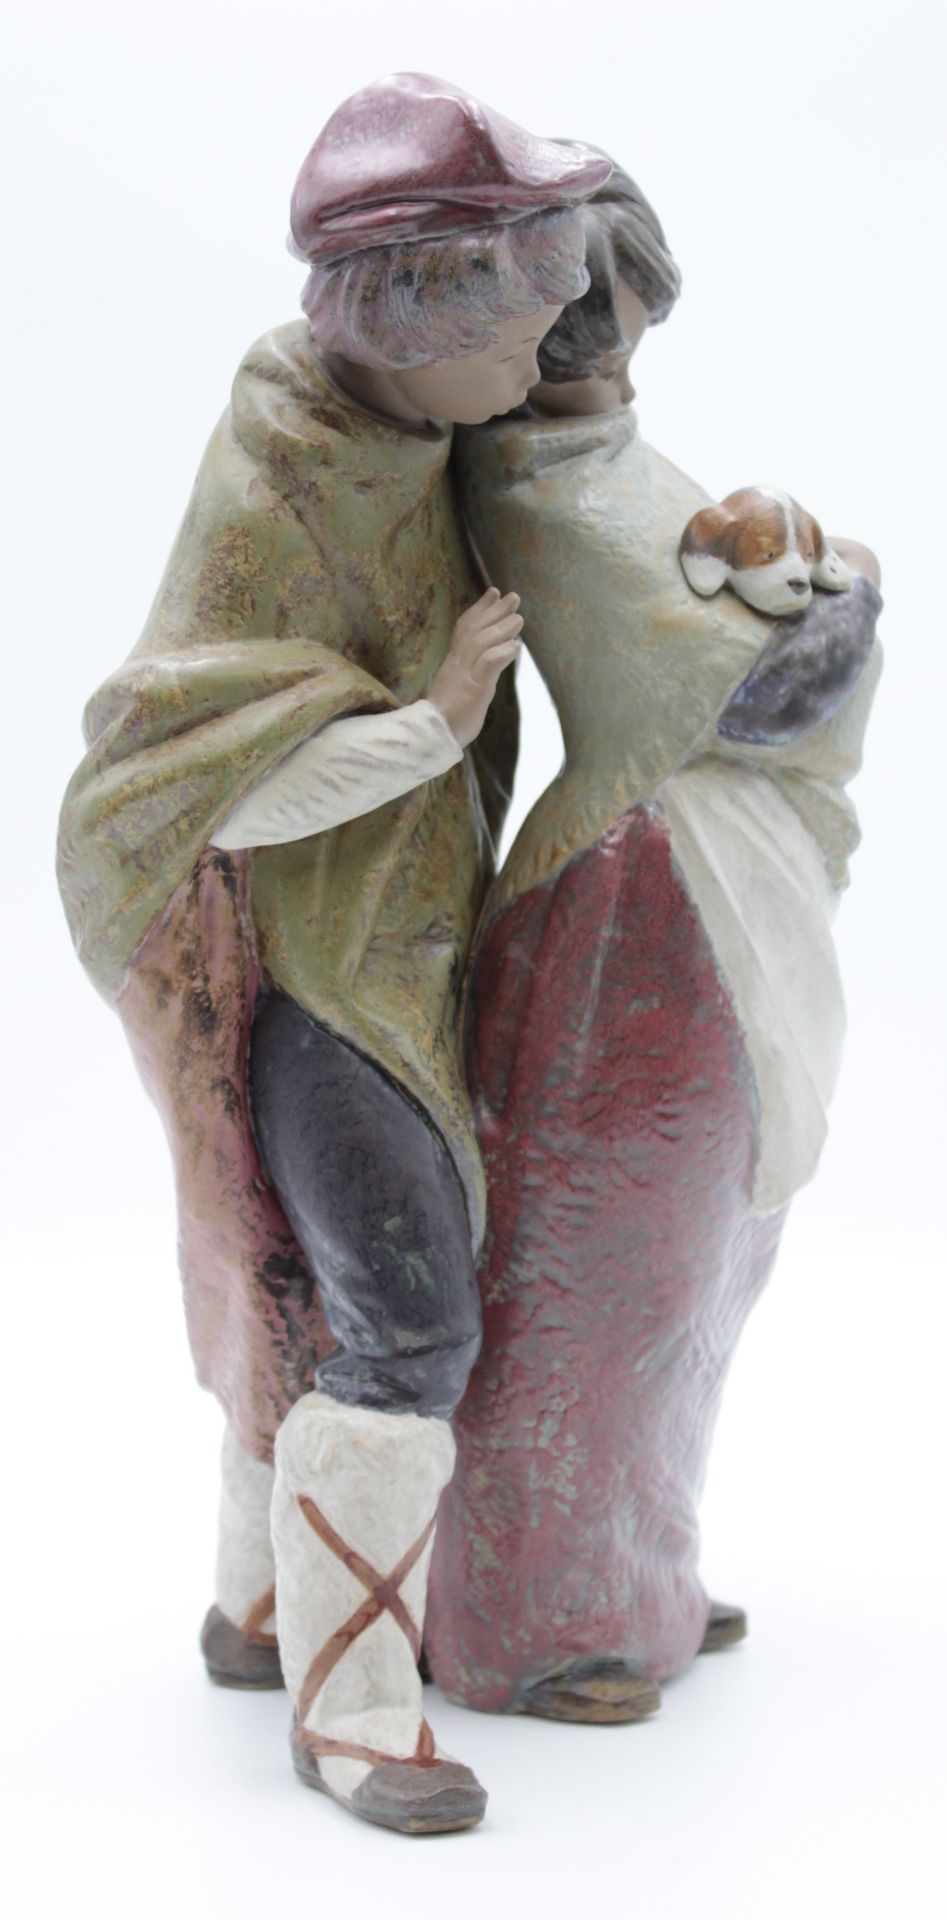 gr. Figurengruppe, Lladro Spain, Modellnr. 1279, Gegen den Wind, Juan Huerta, H-37cm. - Bild 2 aus 5